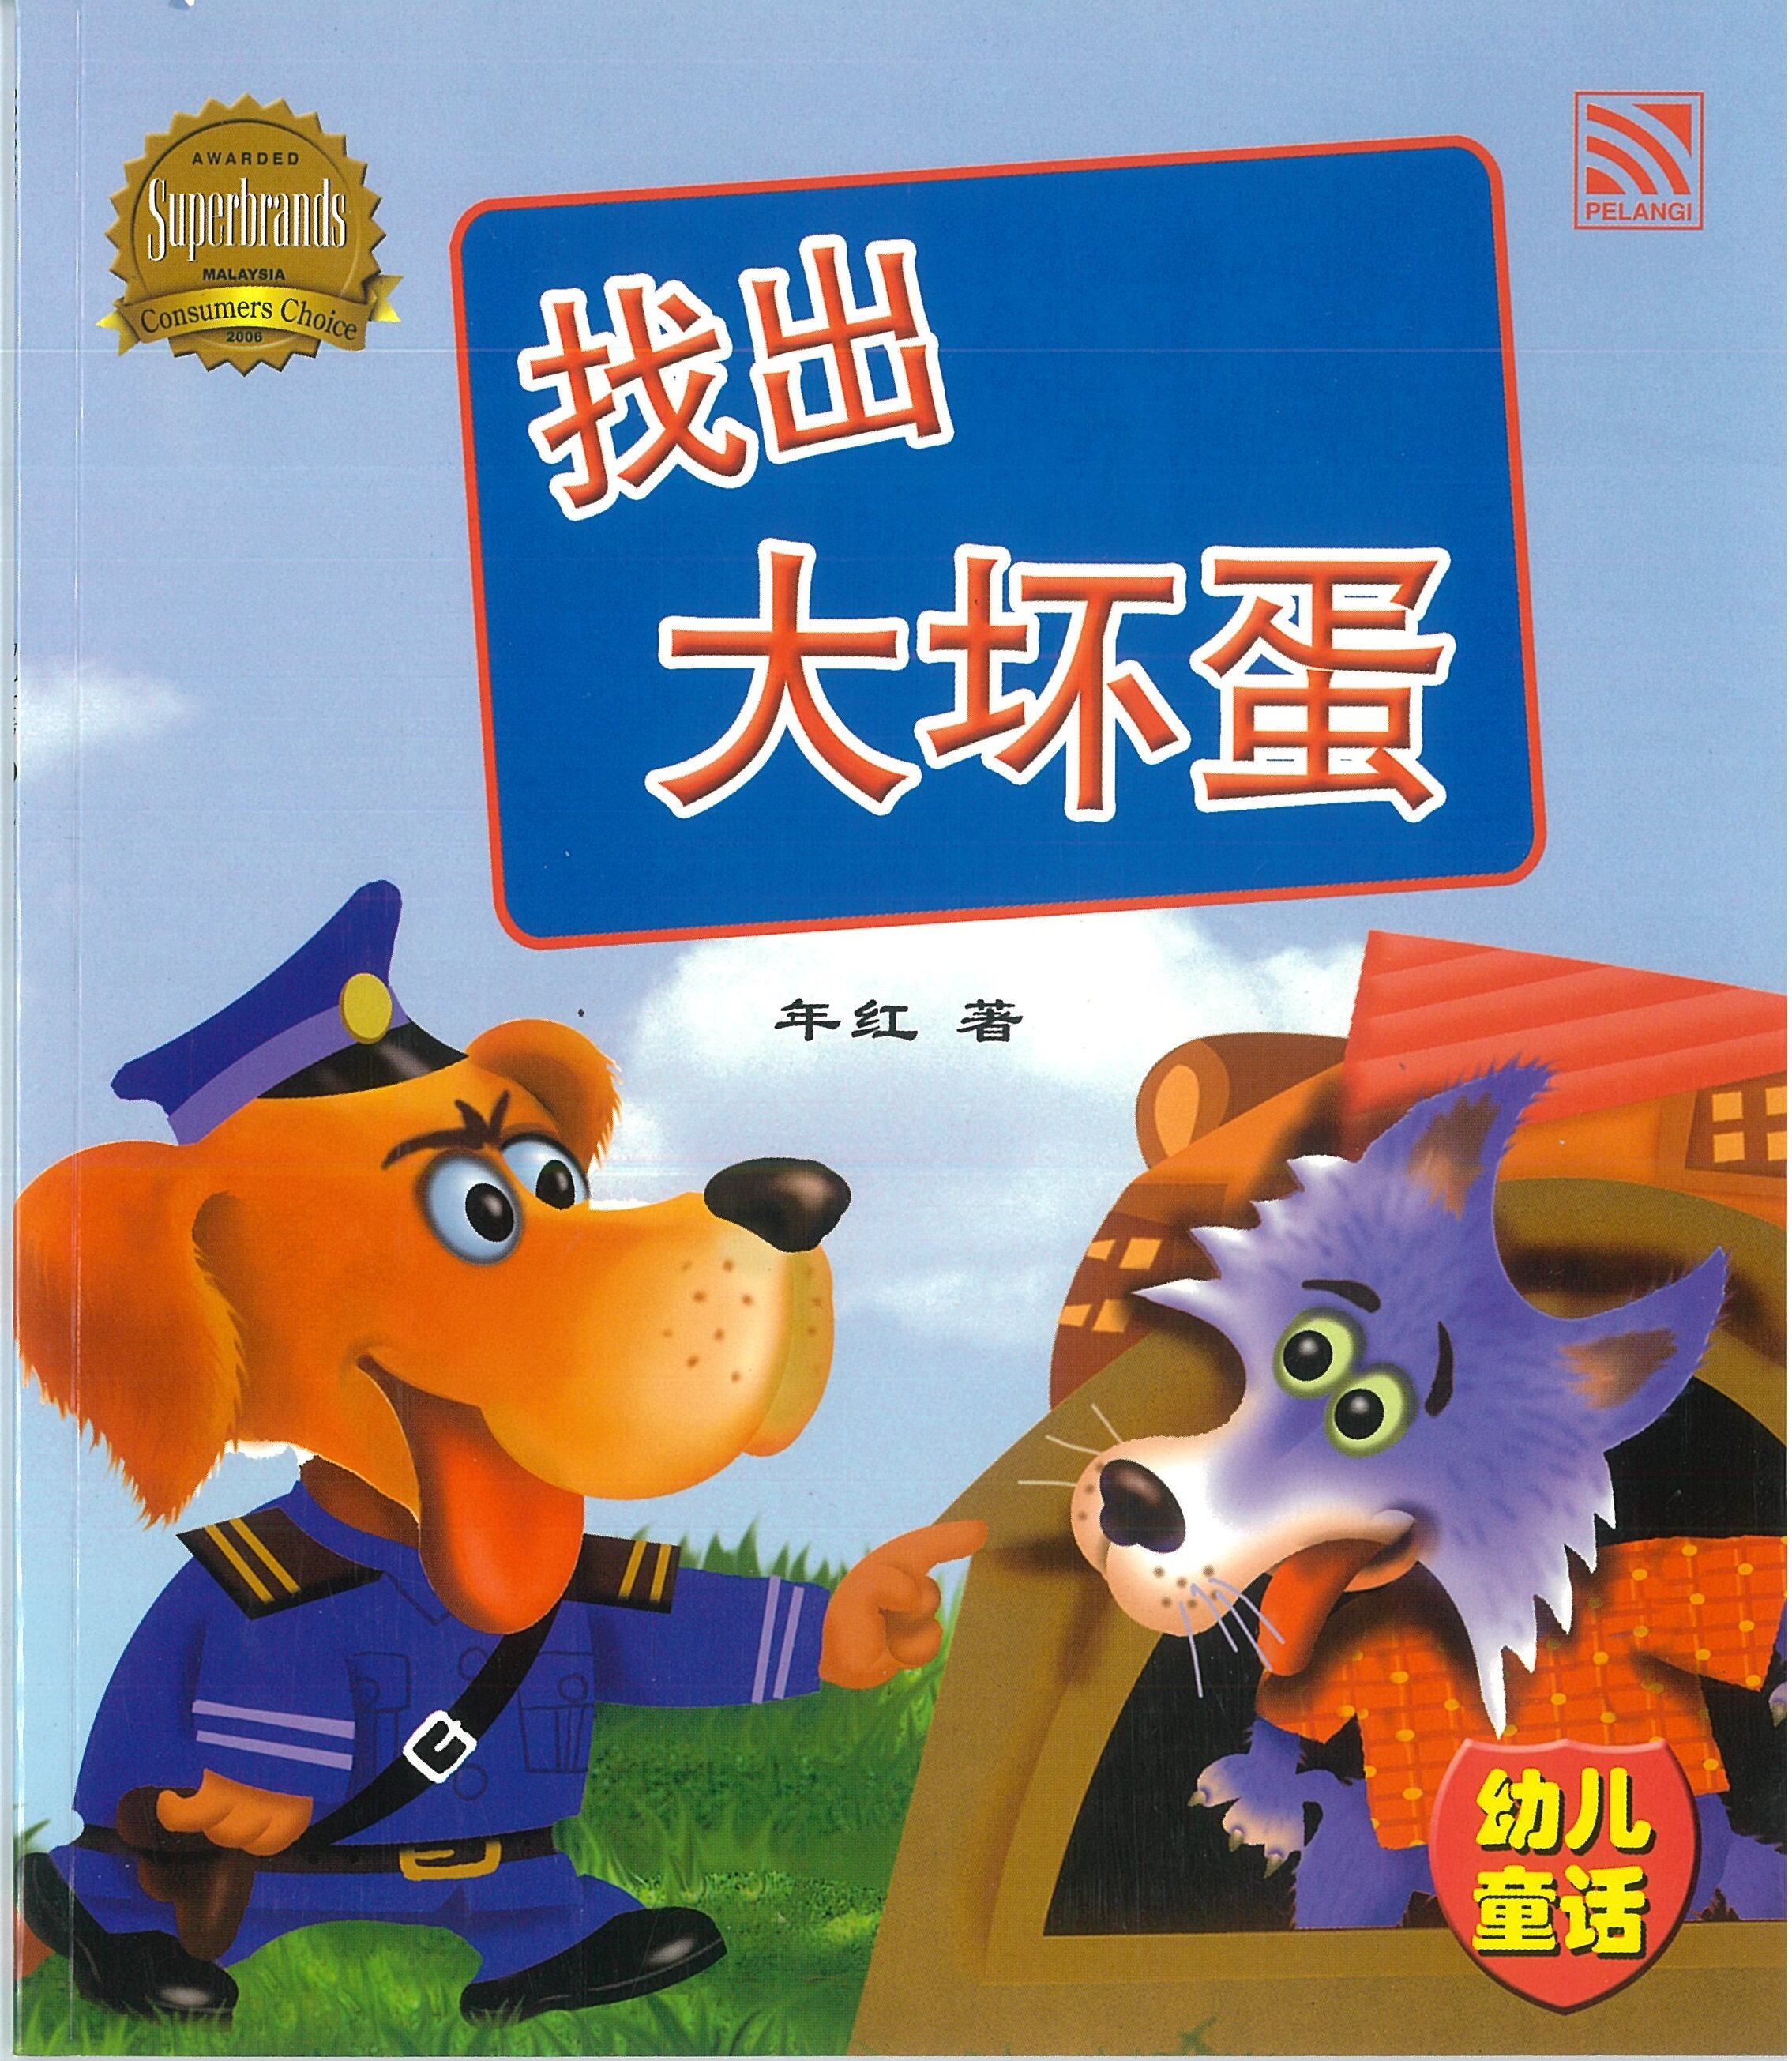 Pelangibooks 幼儿童话系列 儿童中文故事书